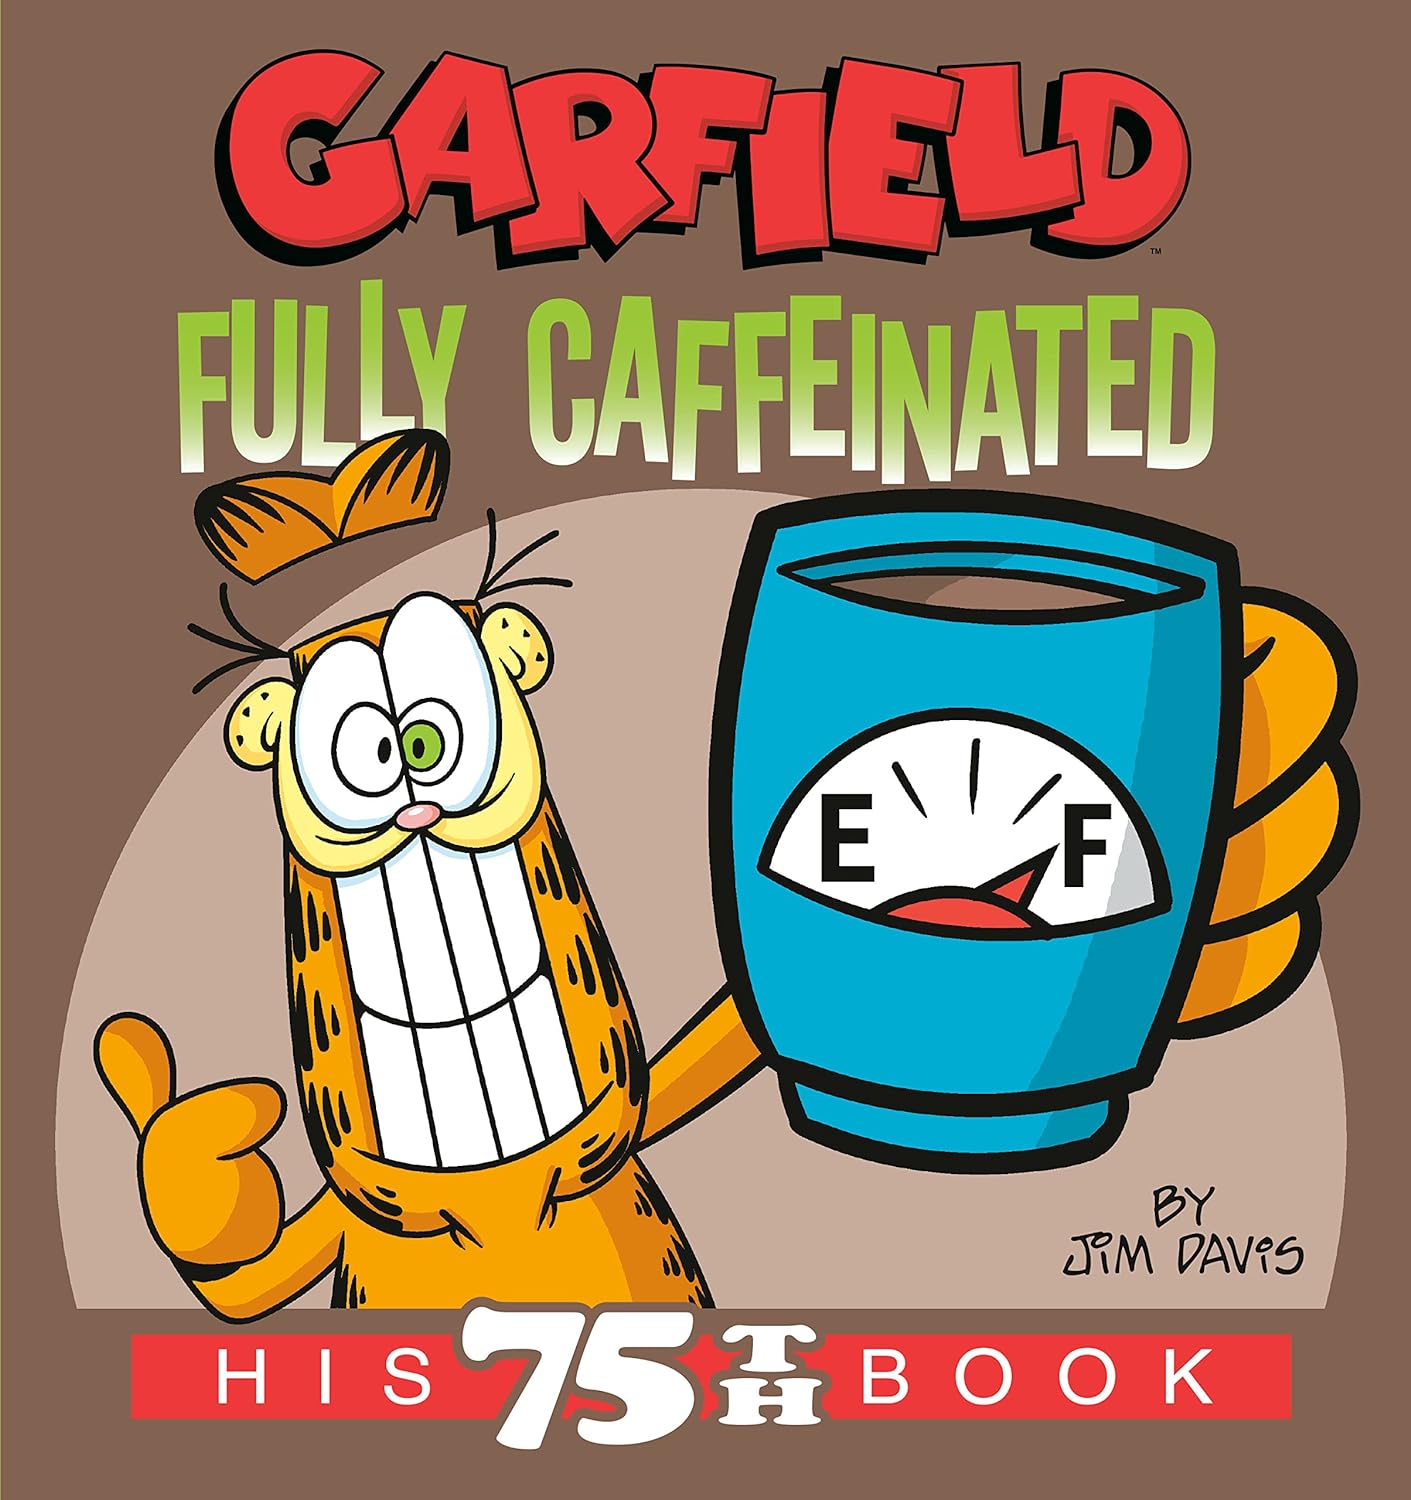 Garfield Fully Caffeinated His 75th Book (Garfield) - SureShot Books Publishing LLC